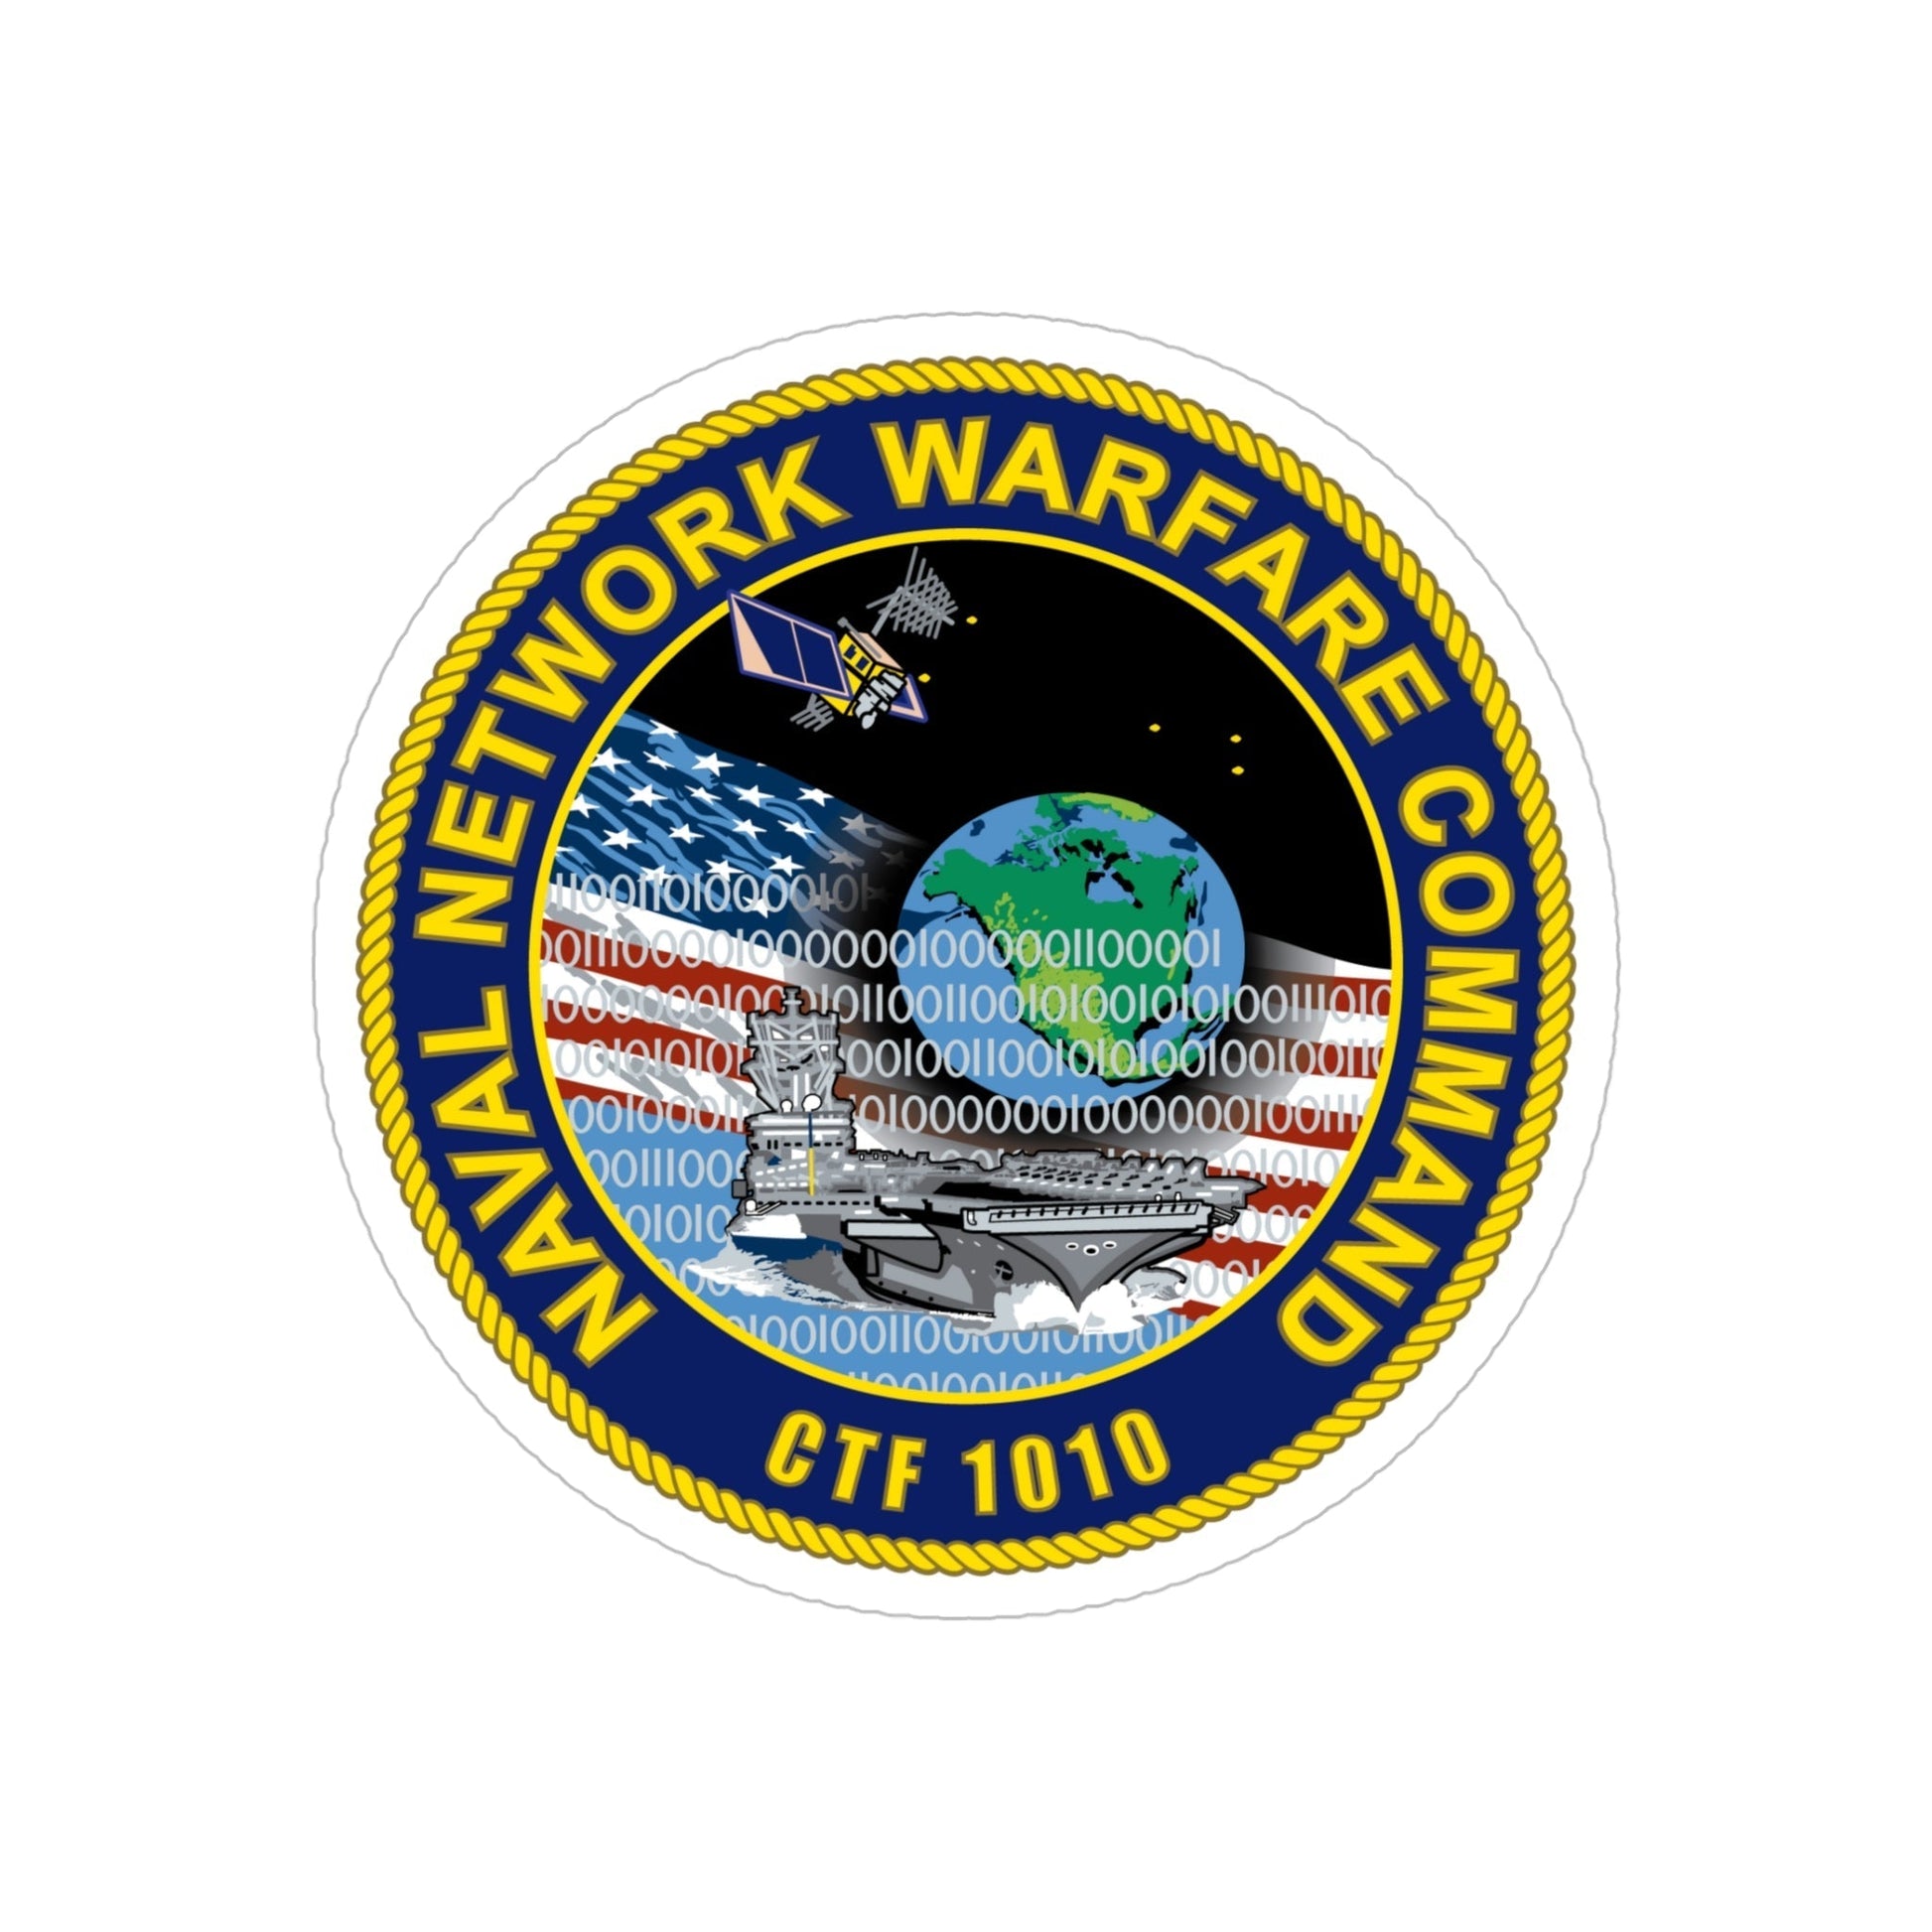 Naval Network Warfare Command CFT 1010 (U.S. Navy) Transparent STICKER Die-Cut Vinyl Decal-5 Inch-The Sticker Space